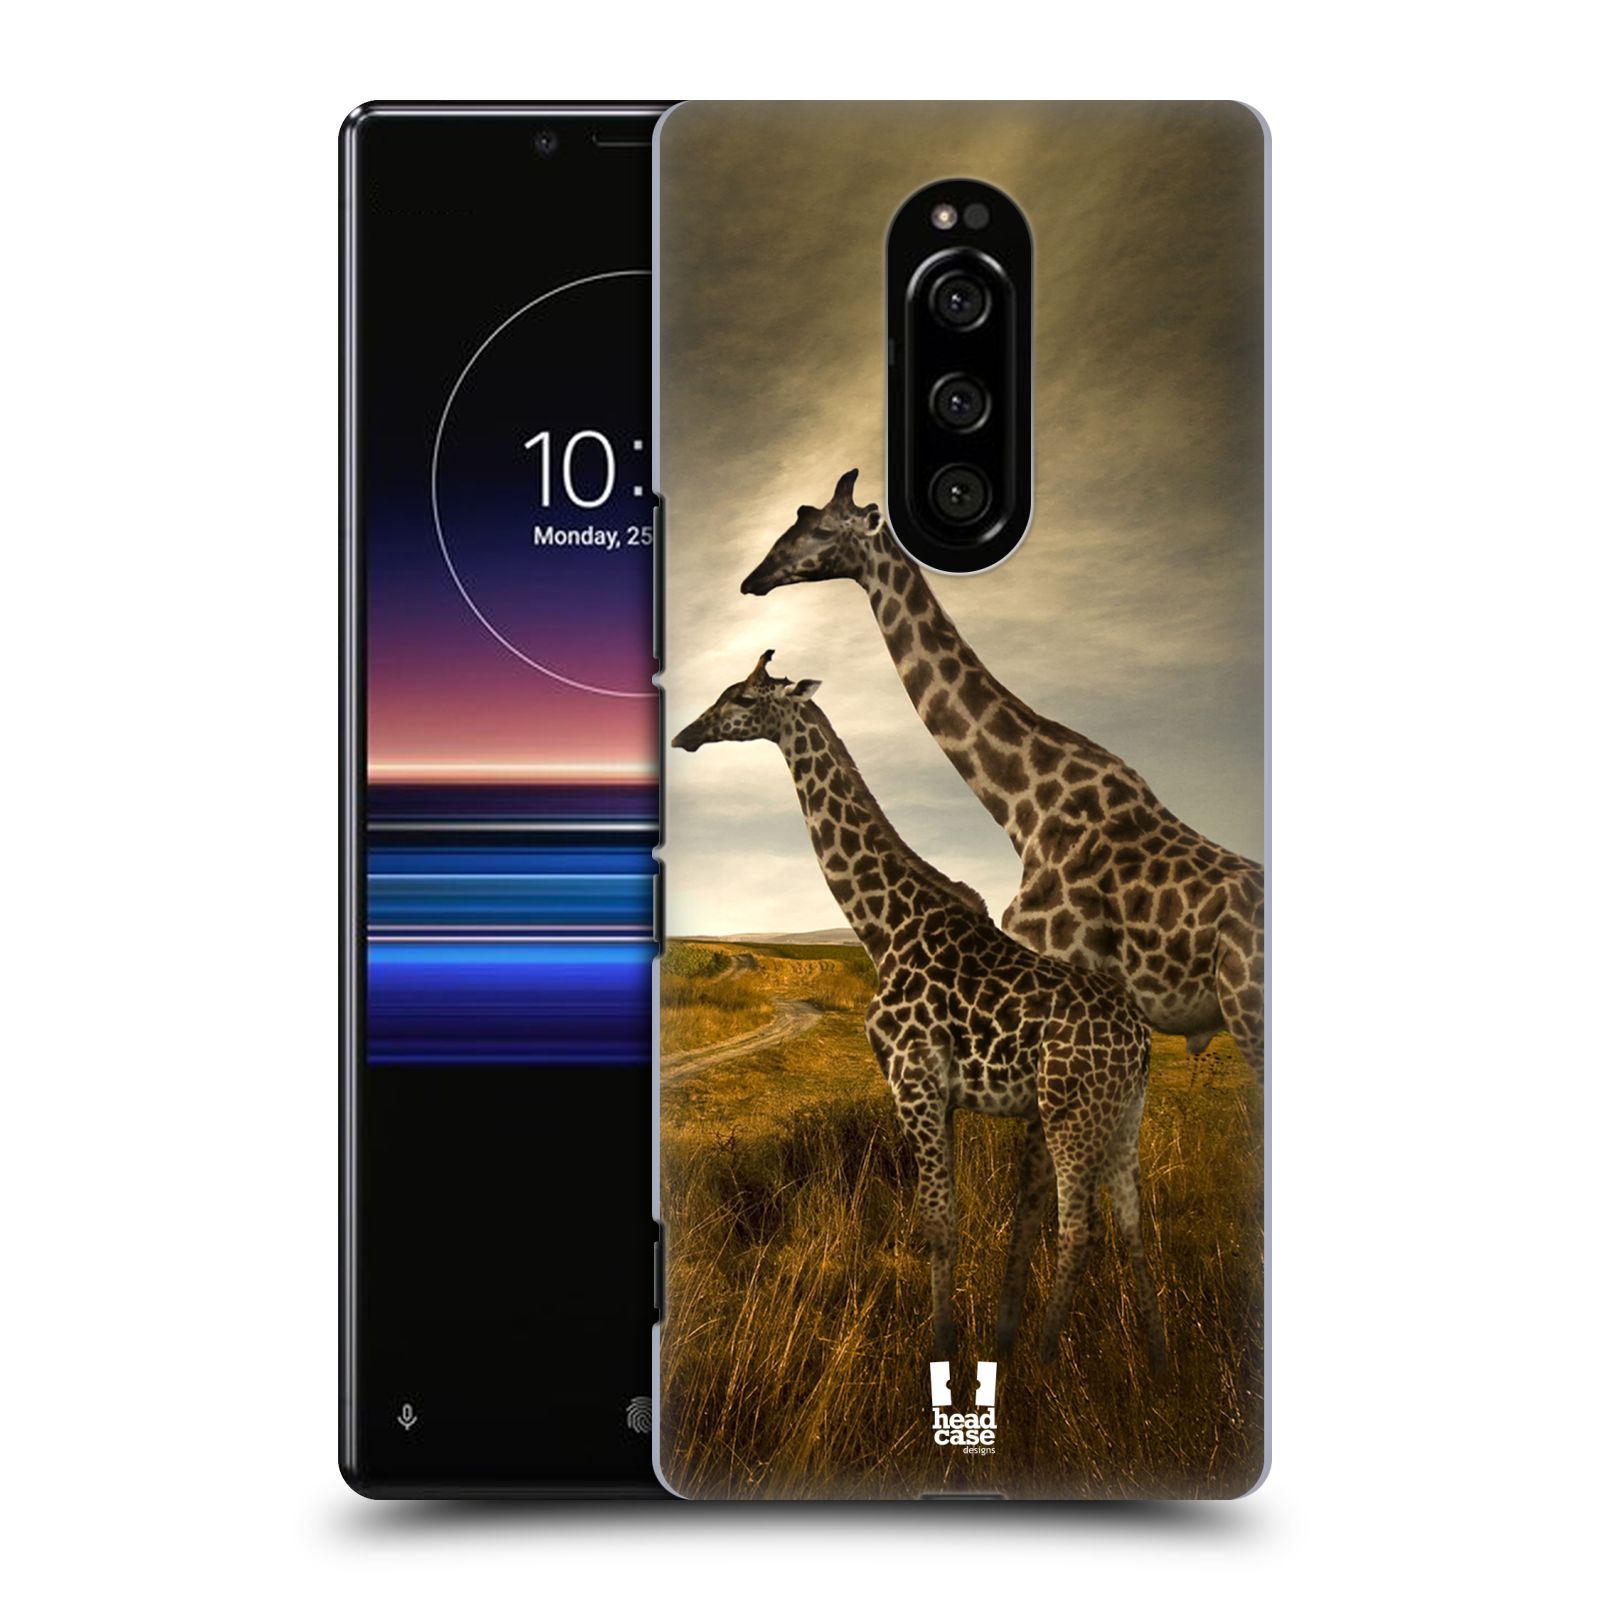 Zadní obal pro mobil Sony Xperia 1 - HEAD CASE - Svět zvířat žirafy